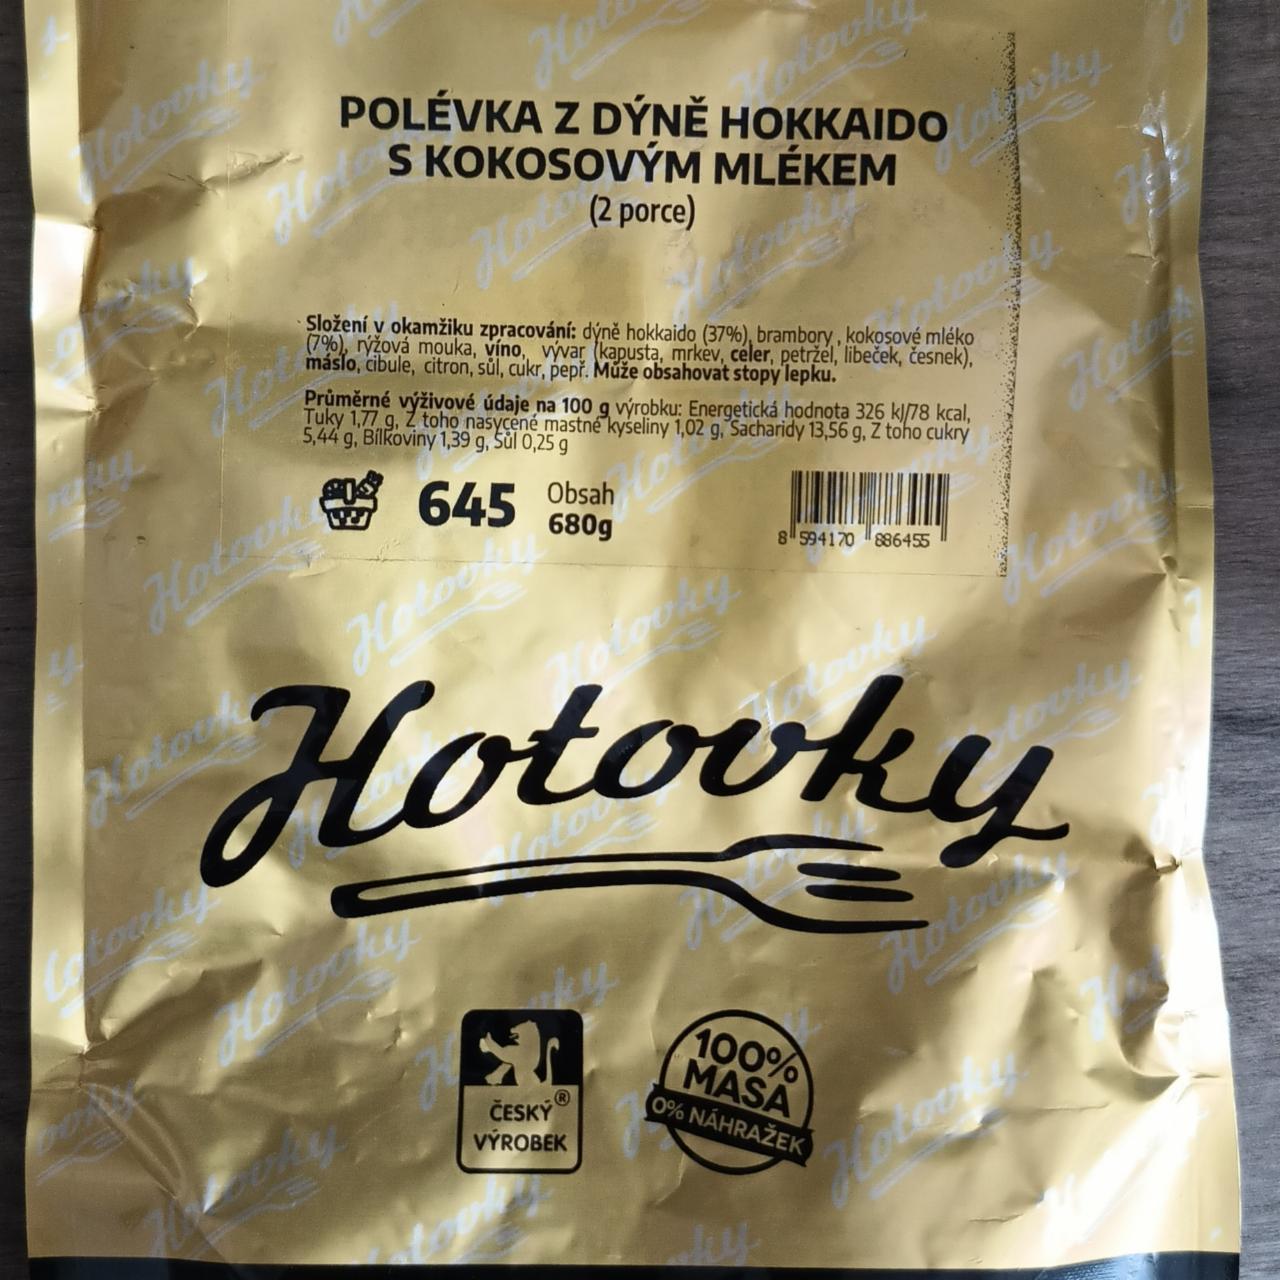 Fotografie - Polévka z dýně hokkaido s kokosovým mlékem Hotovky.cz